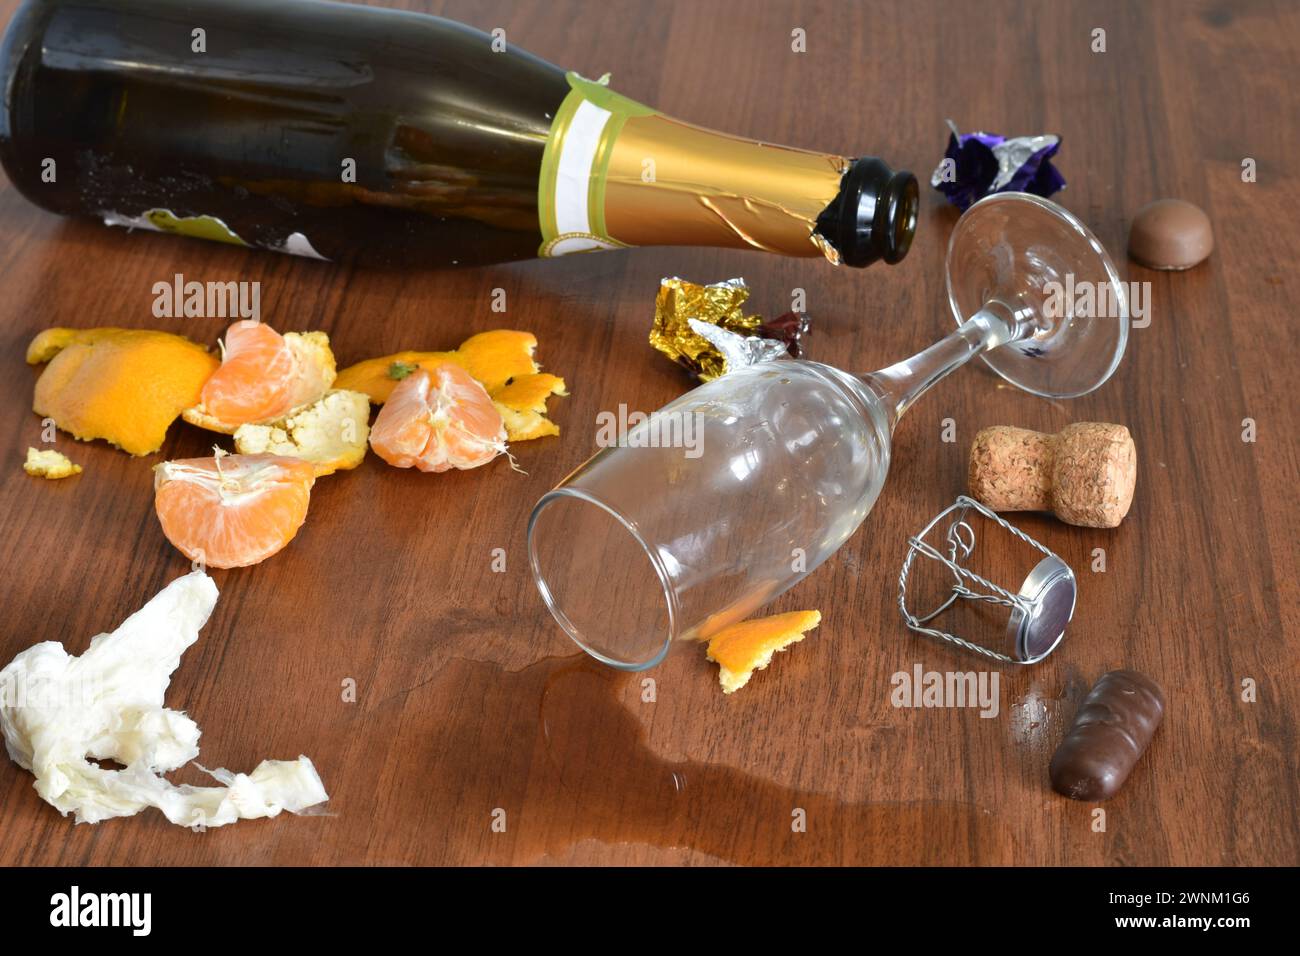 Nach einem lustigen Urlaub blieben eine Flasche, ein Glas mit verschüttetem Wein und eine Schale von Mandarinen auf dem Tisch. Stockfoto